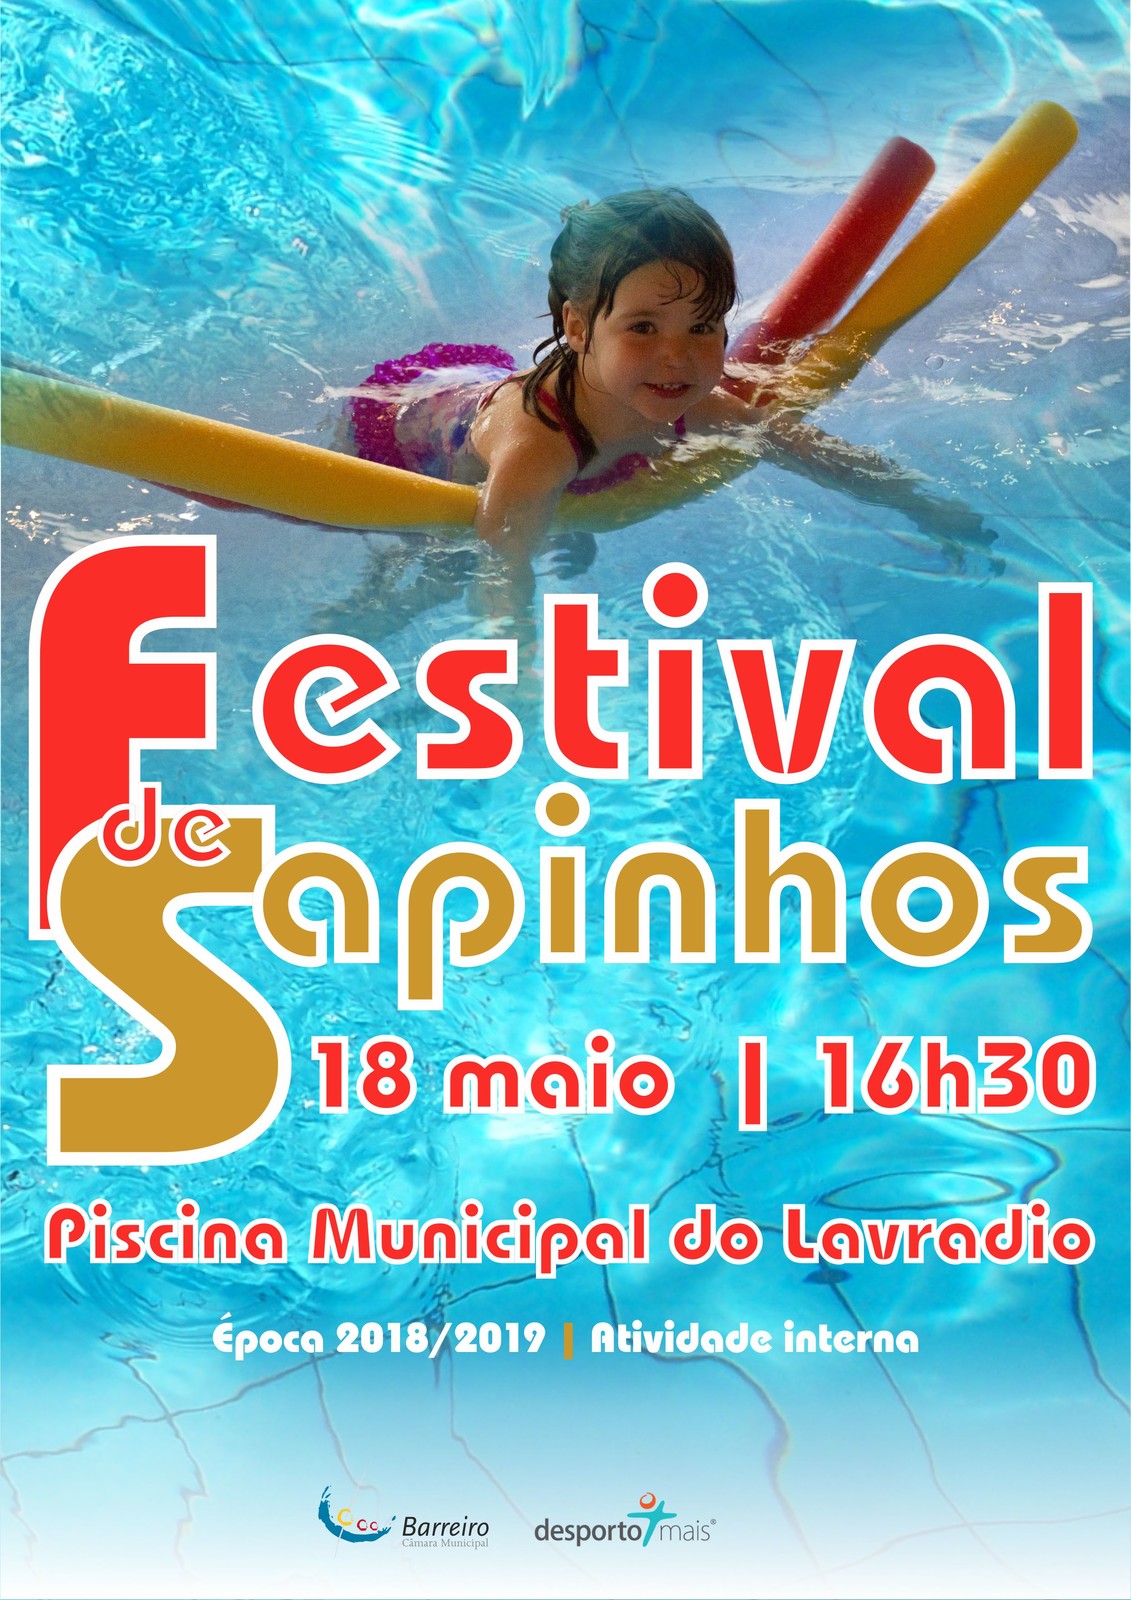 Festival de Sapinhos 2019